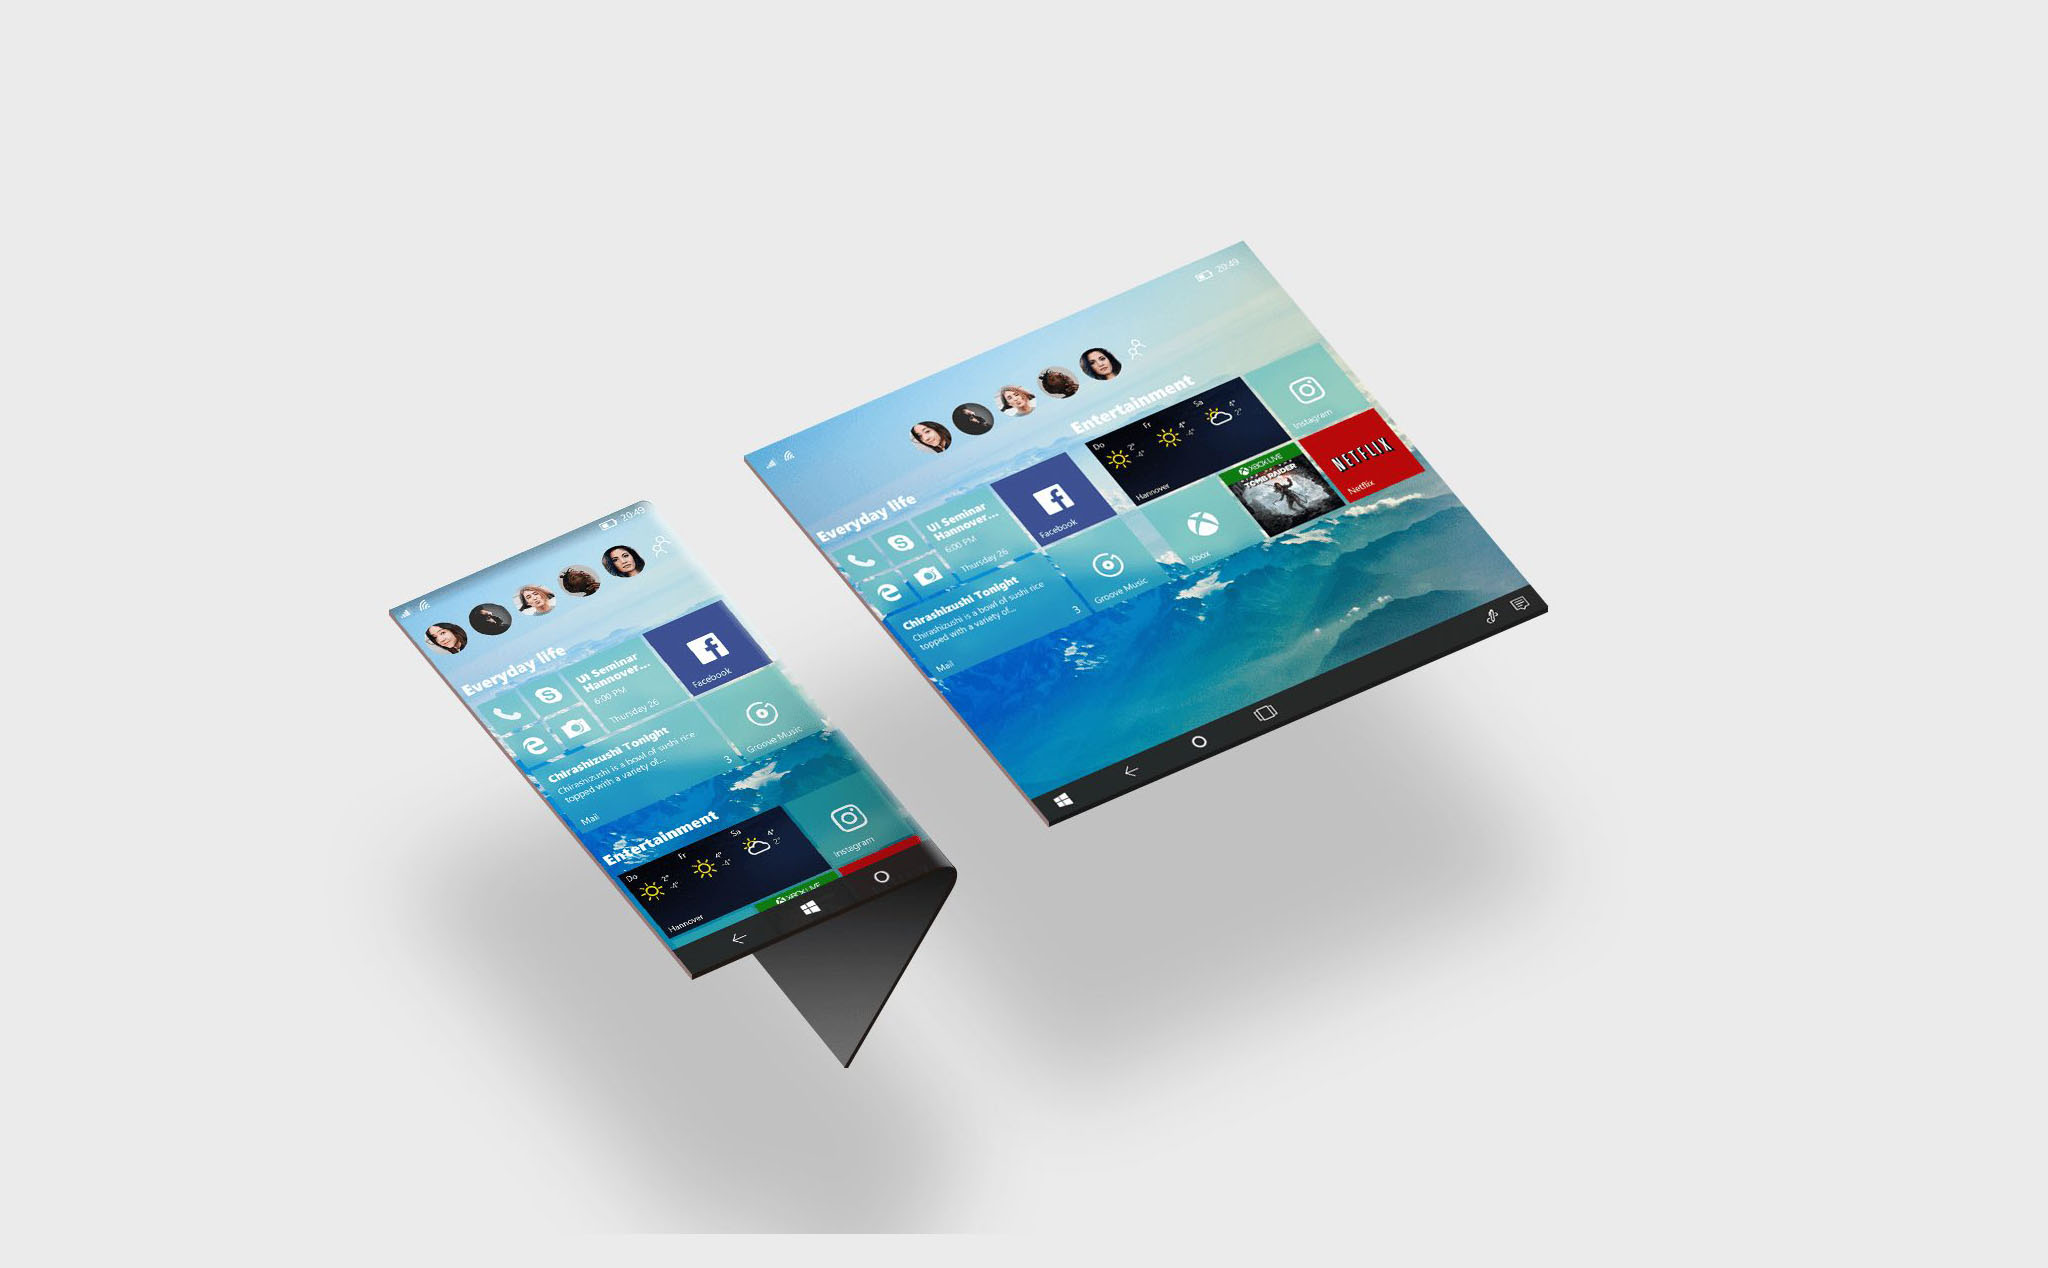 Windows Core OS sẽ là HĐH dựa trên nền tảng đám mây cho nhiều thiết bị, có cả điện thoại?